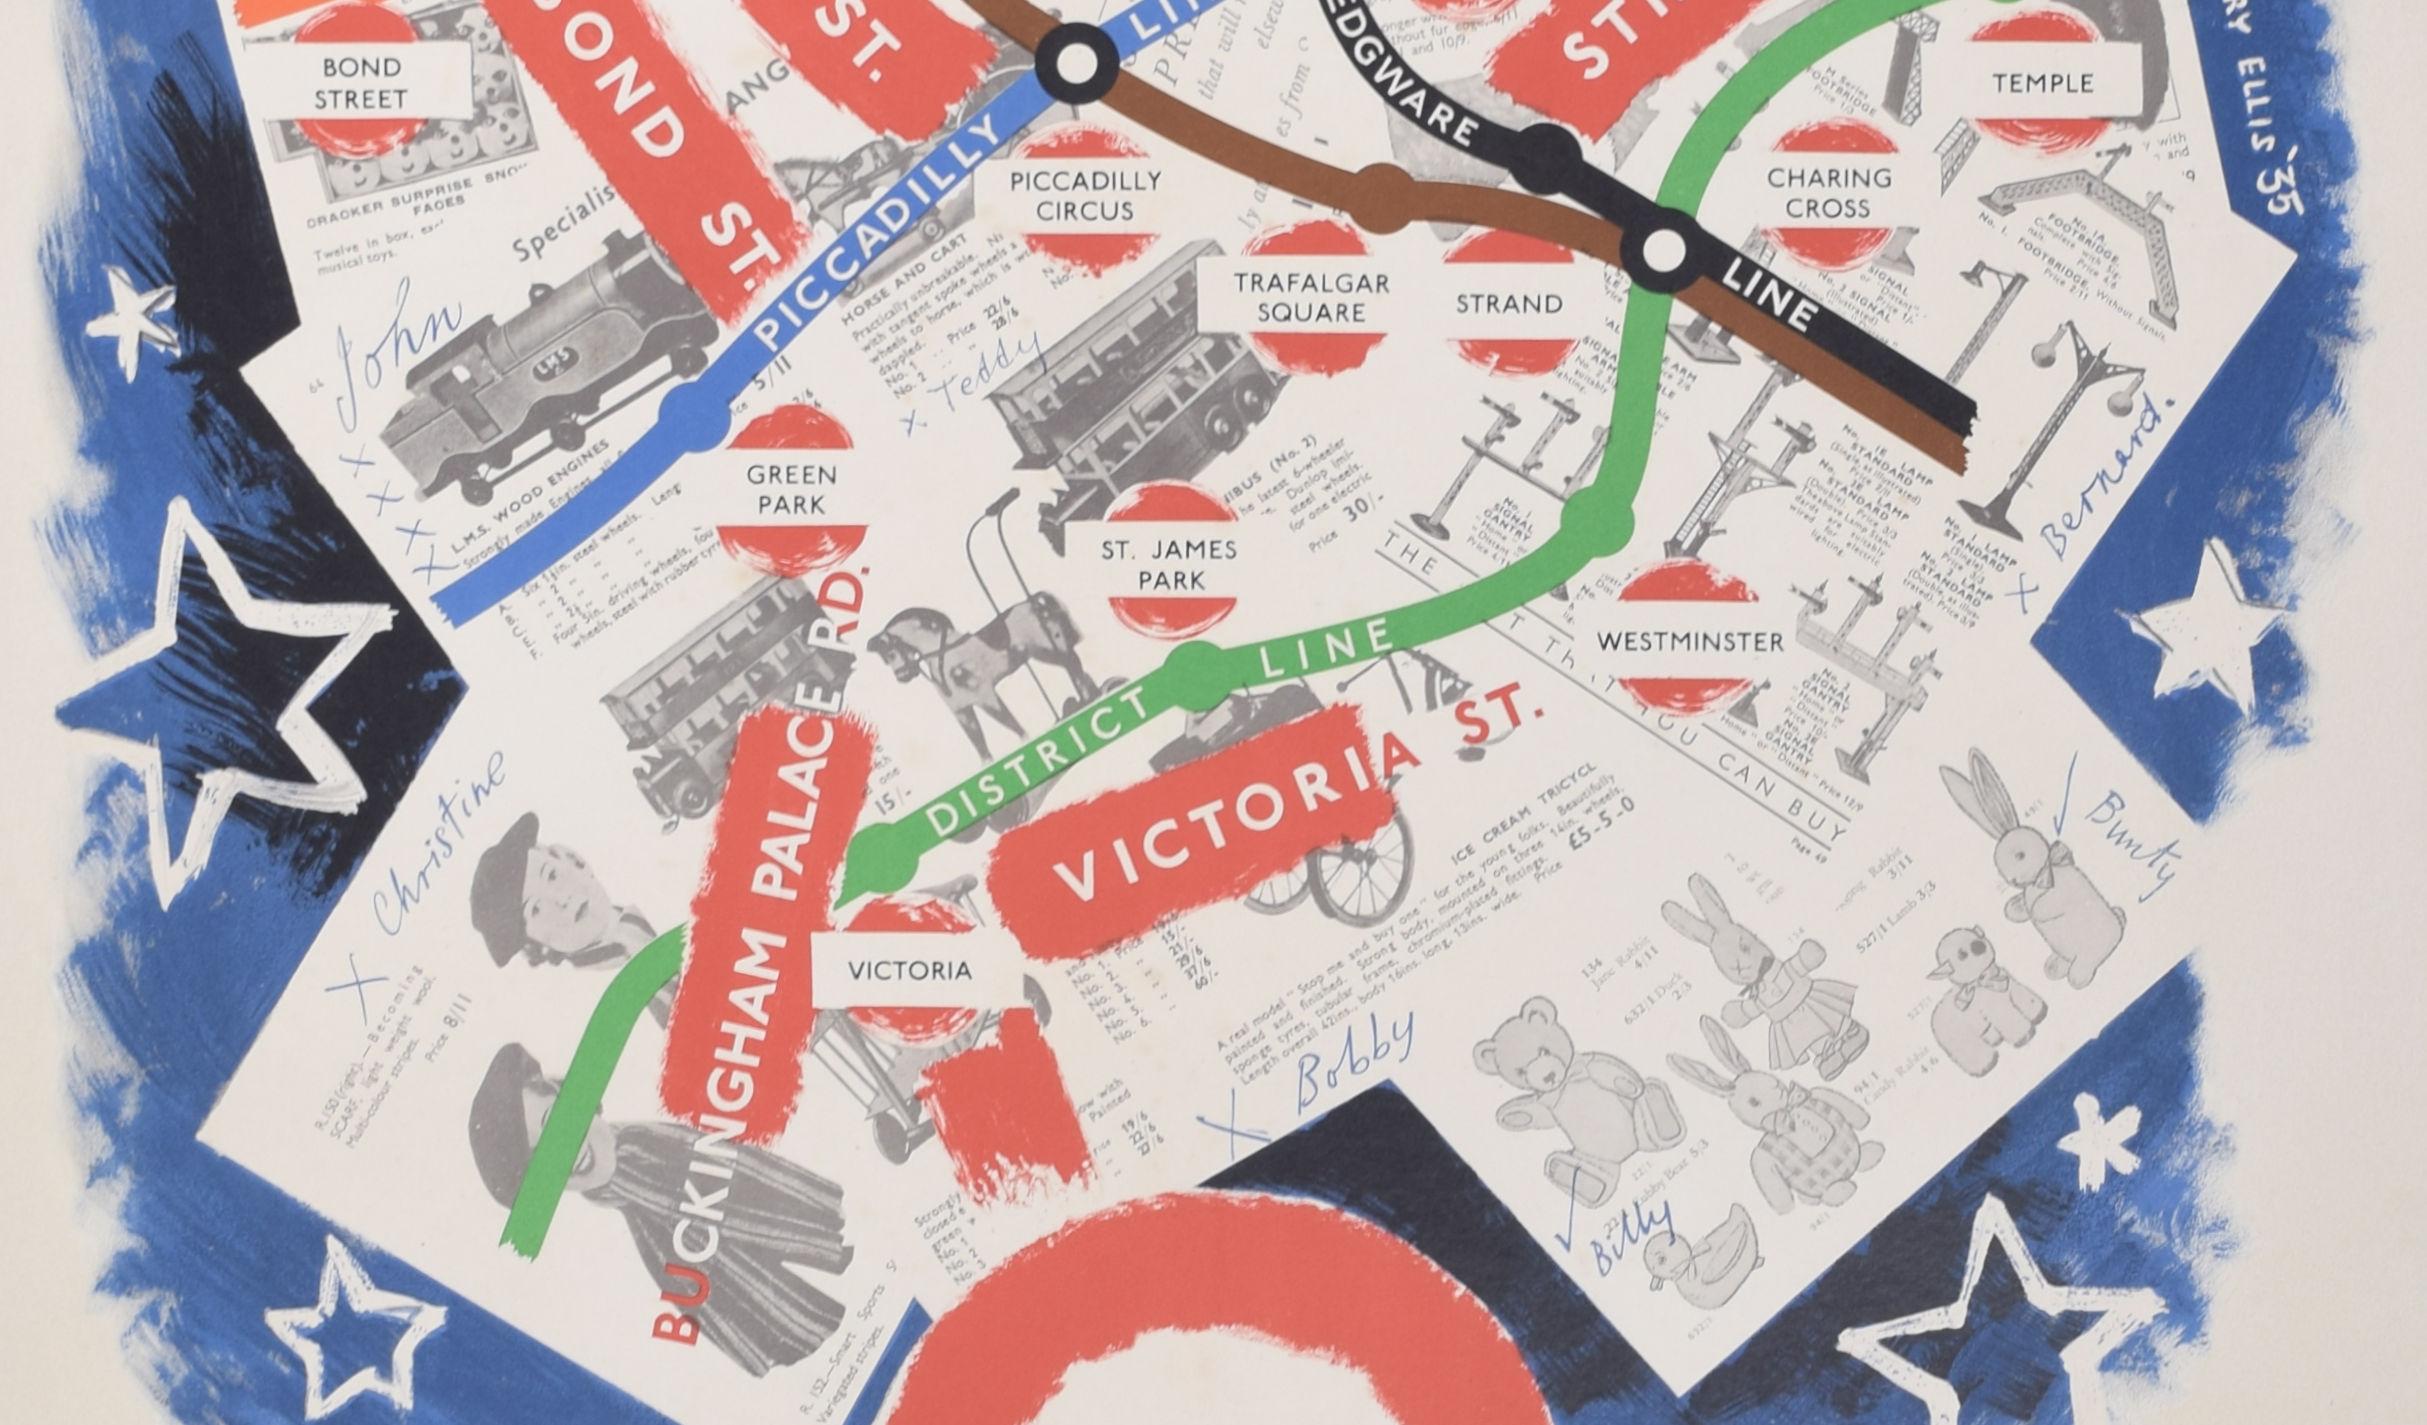 Um unsere anderen originalen Vintage-Reiseplakate zu sehen, einschließlich weiterer Vorkriegs-Plakate von London Transport, scrollen Sie nach unten zu 